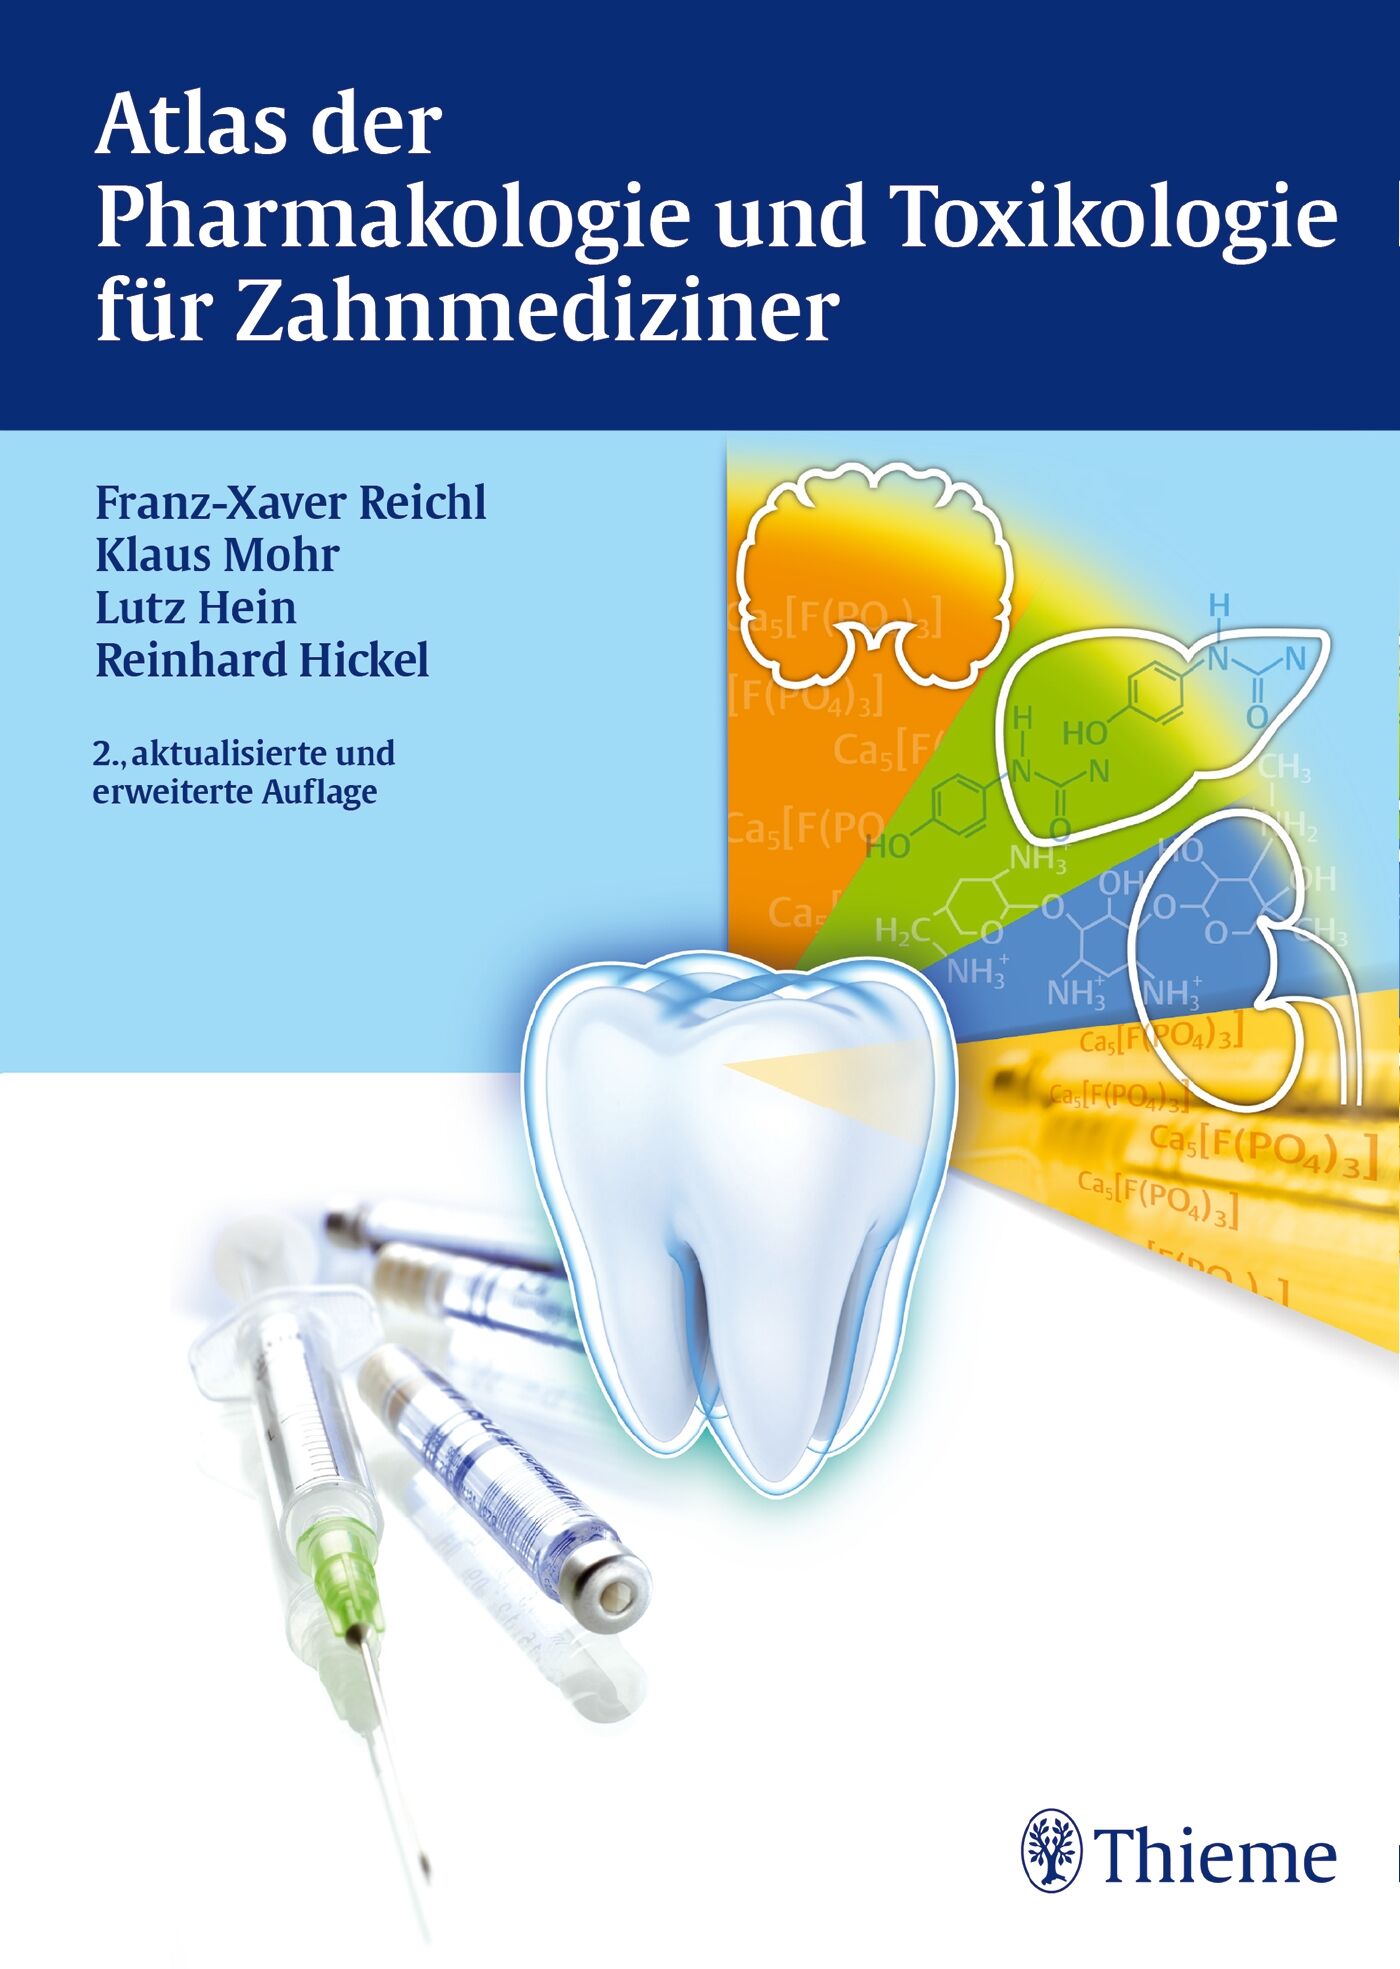 Atlas der Pharmakologie und Toxikologie für Zahnmediziner, 9783131738523